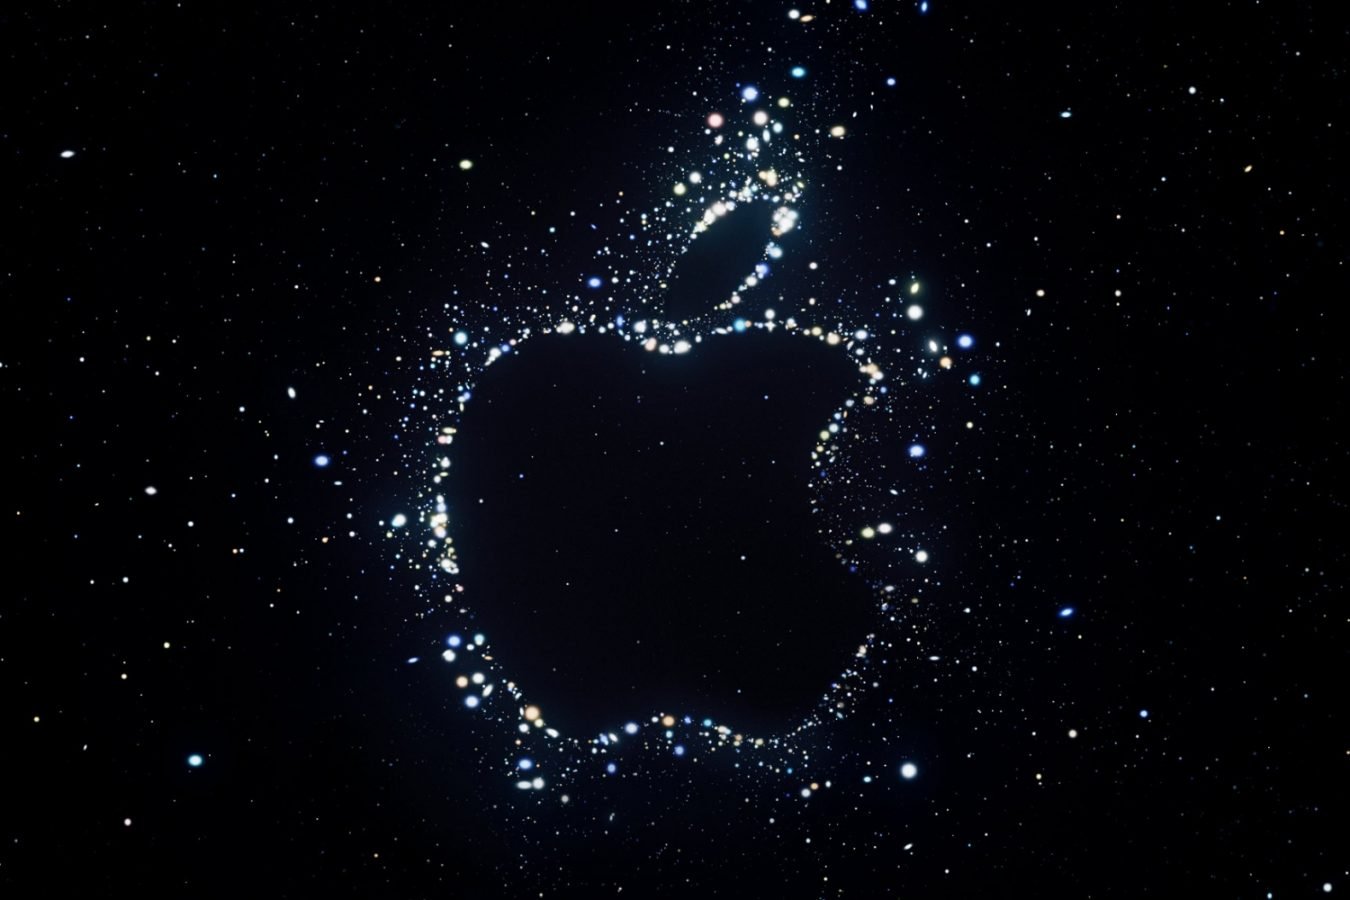 Apple konferencja iPhone 14